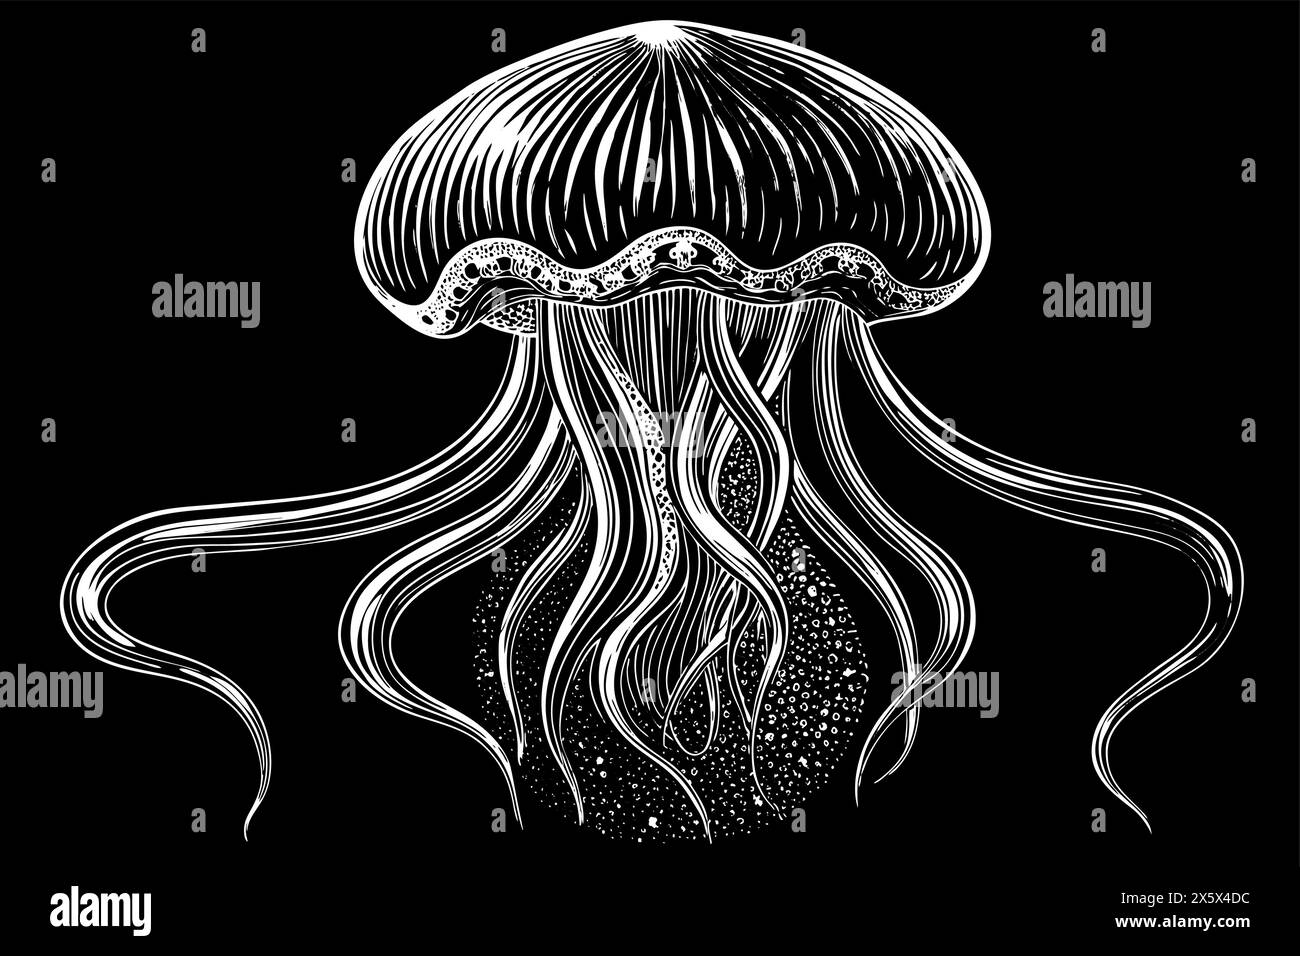 Silhouette bianca di meduse con tentacoli fluenti. Oceanic medusa. Concetto di animale oceanico, creatura marina. Illustrazione grafica. Stampa, elemento per Illustrazione Vettoriale